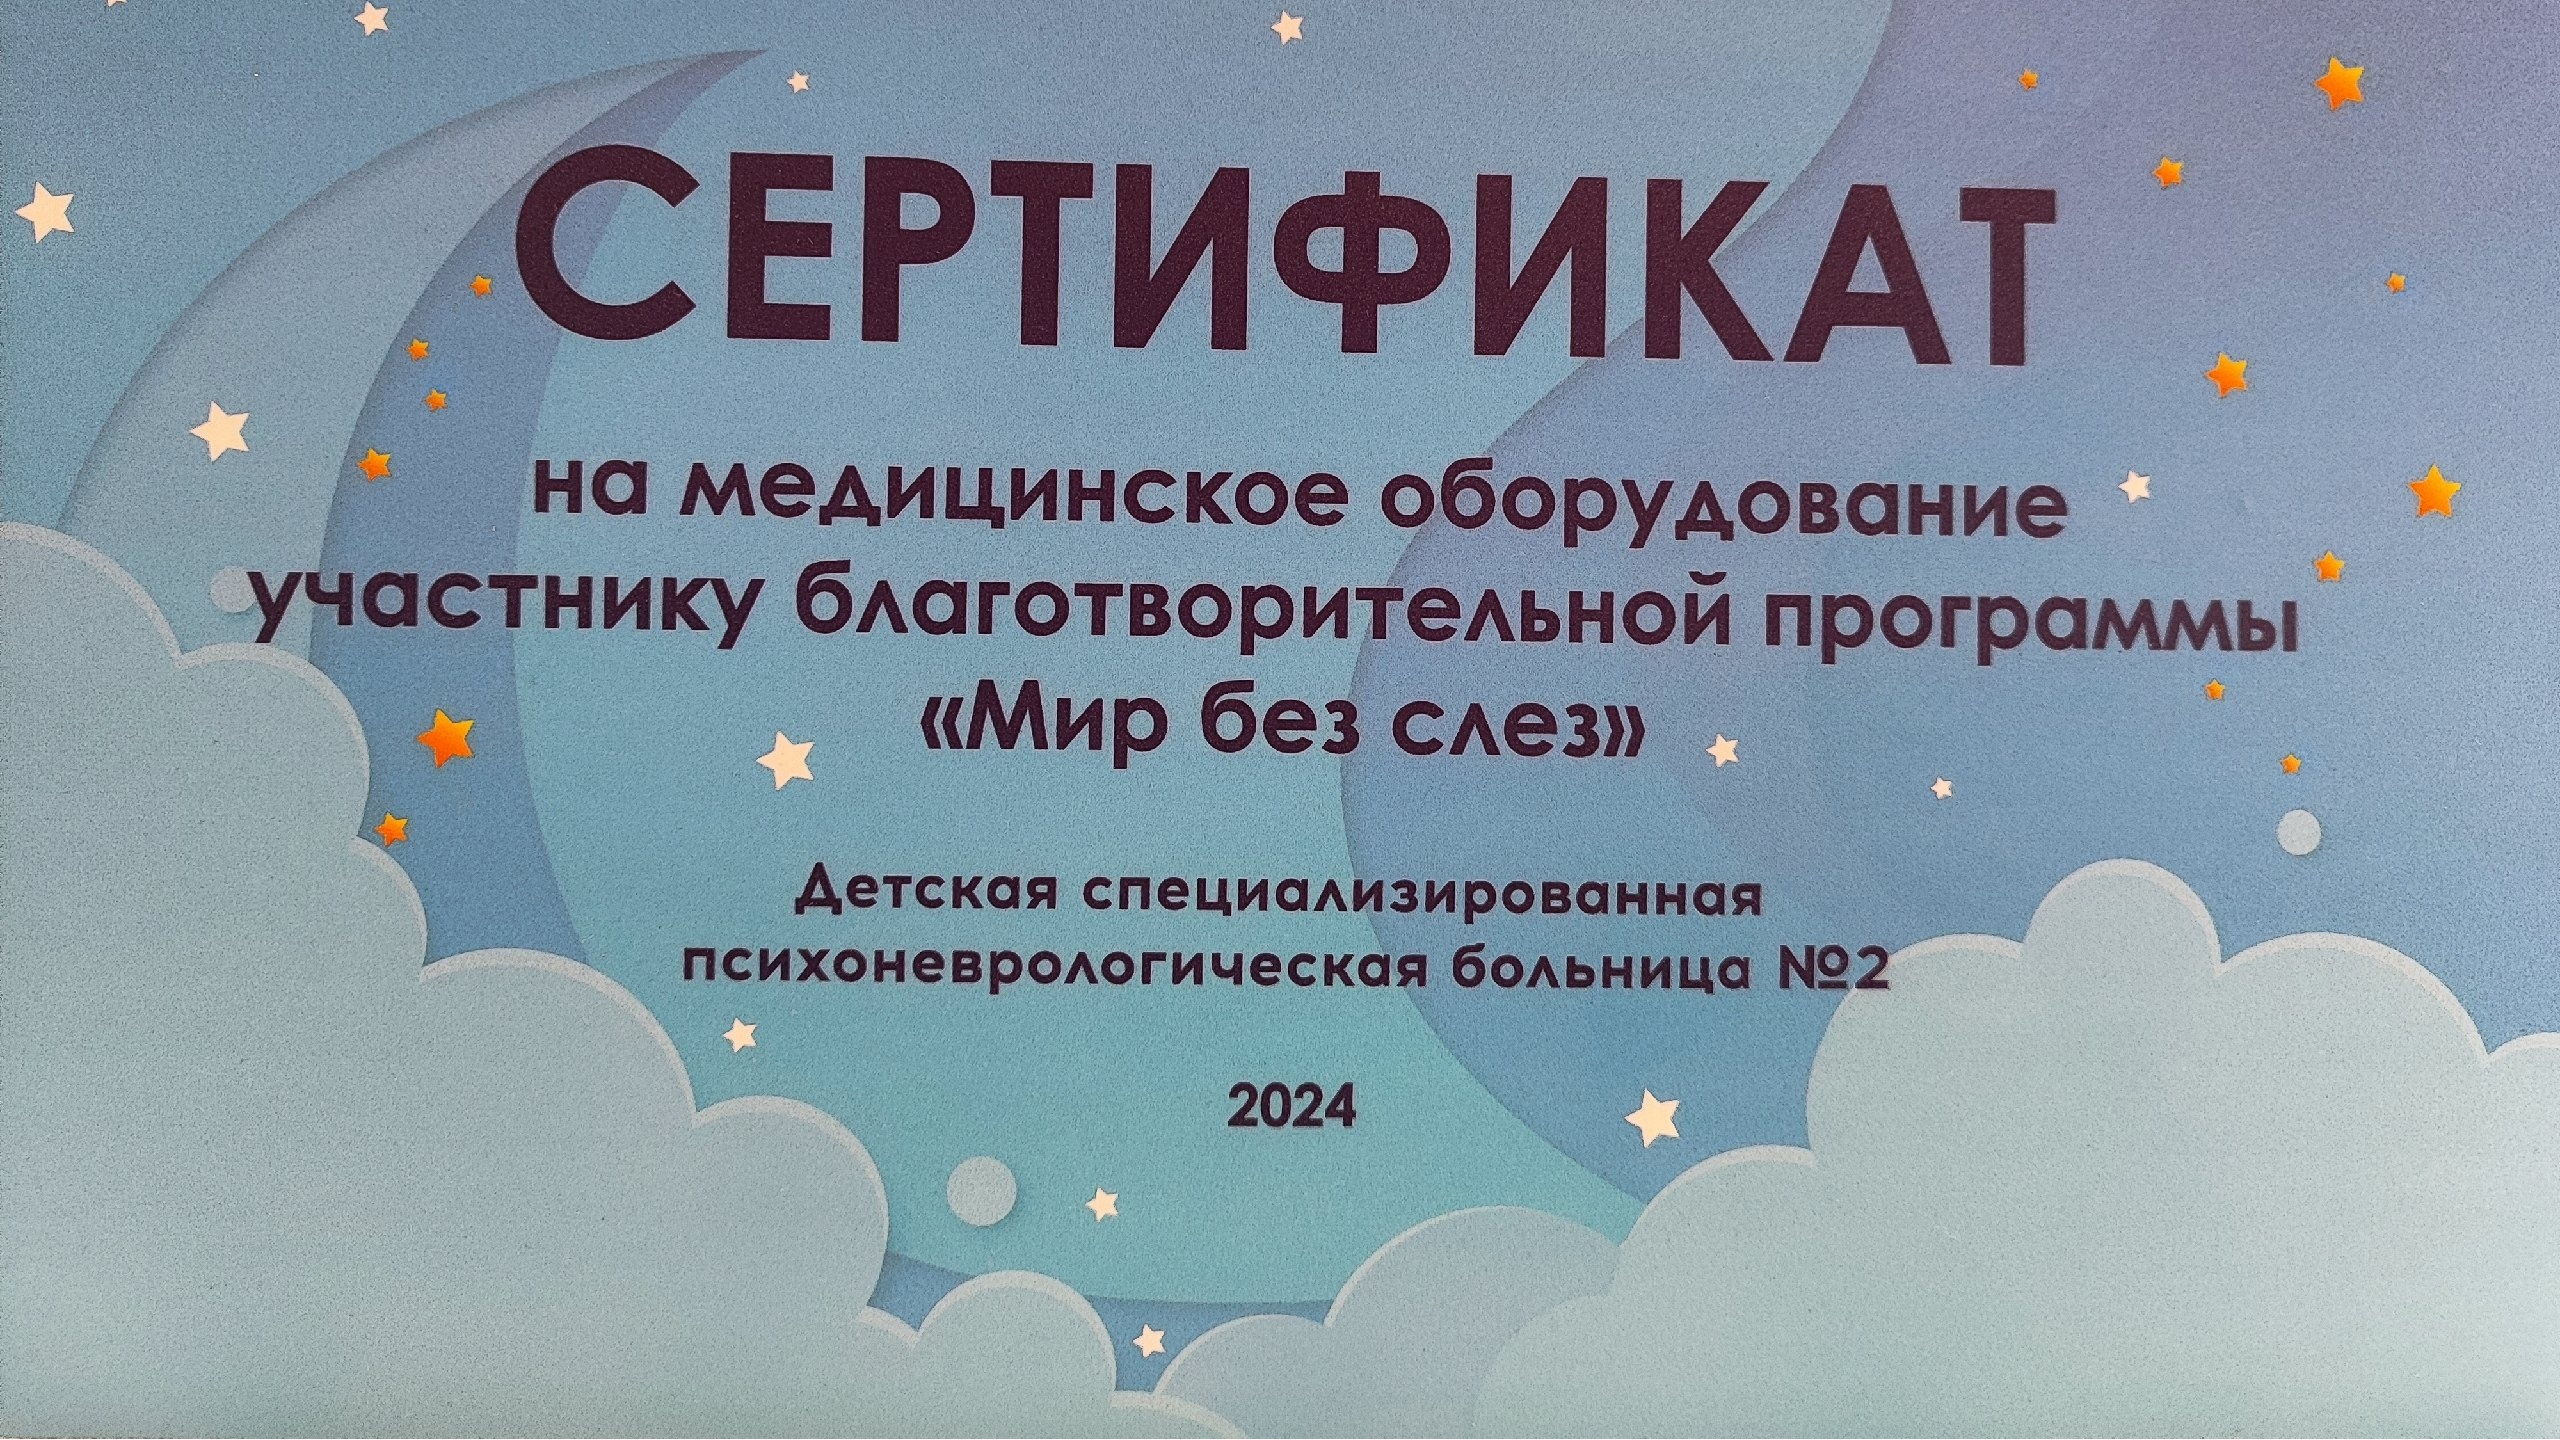 ВТБ подарил психоневрологической больнице Ульяновска оборудование для лечения детей